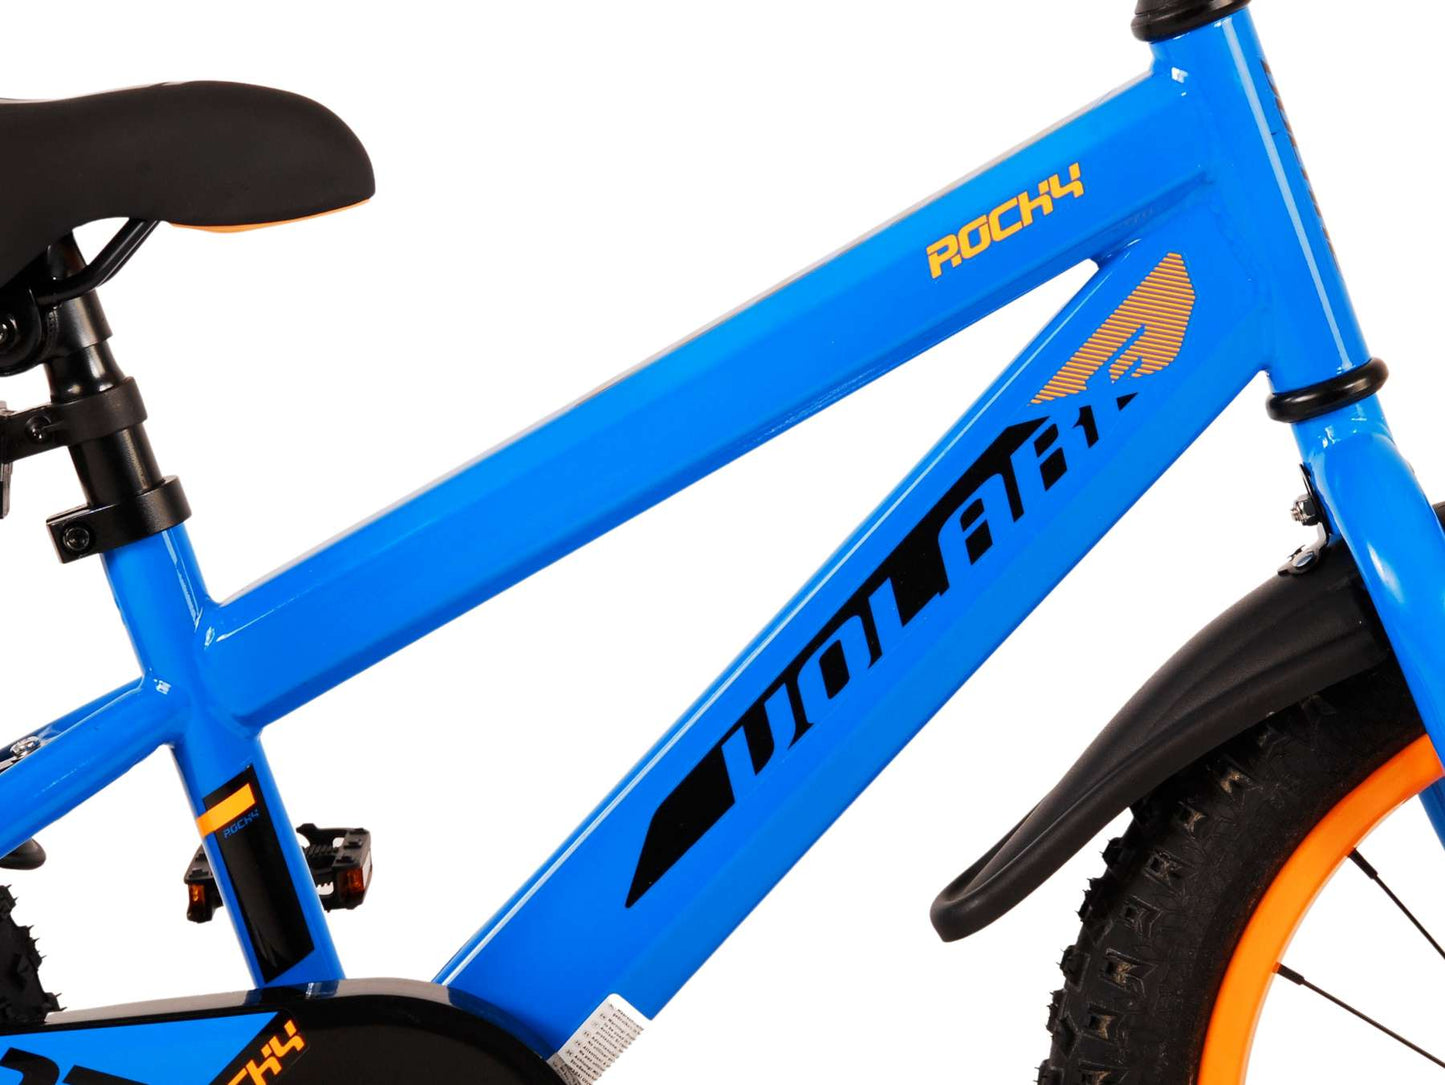 Bicicleta para niños Rocky de Vlare - Niños - 16 pulgadas - Azul